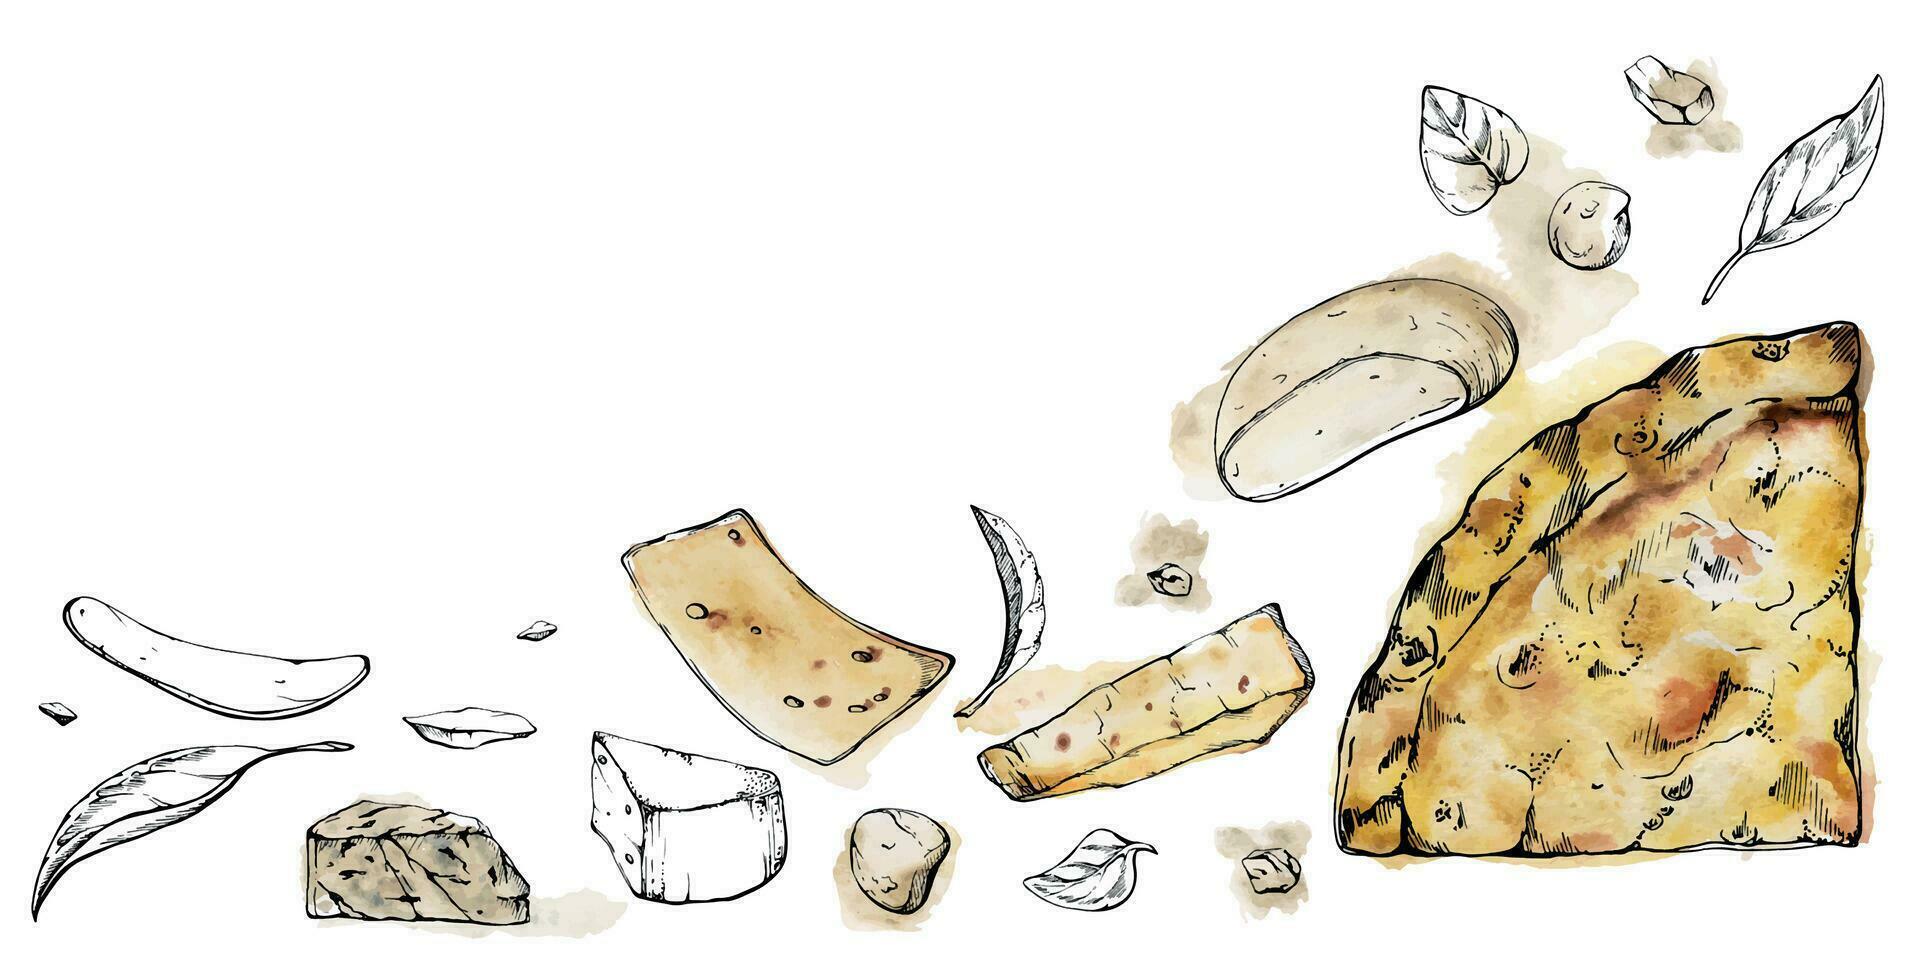 Hand gezeichnet Aquarell Tinte Illustration. quattro Formaggi vier Käse Pizza Scheibe, Italienisch Küche. Komposition isoliert auf Weiß. Design zum Restaurant Speisekarte, Cafe, Essen Geschäft oder Paket, Flyer drucken. vektor